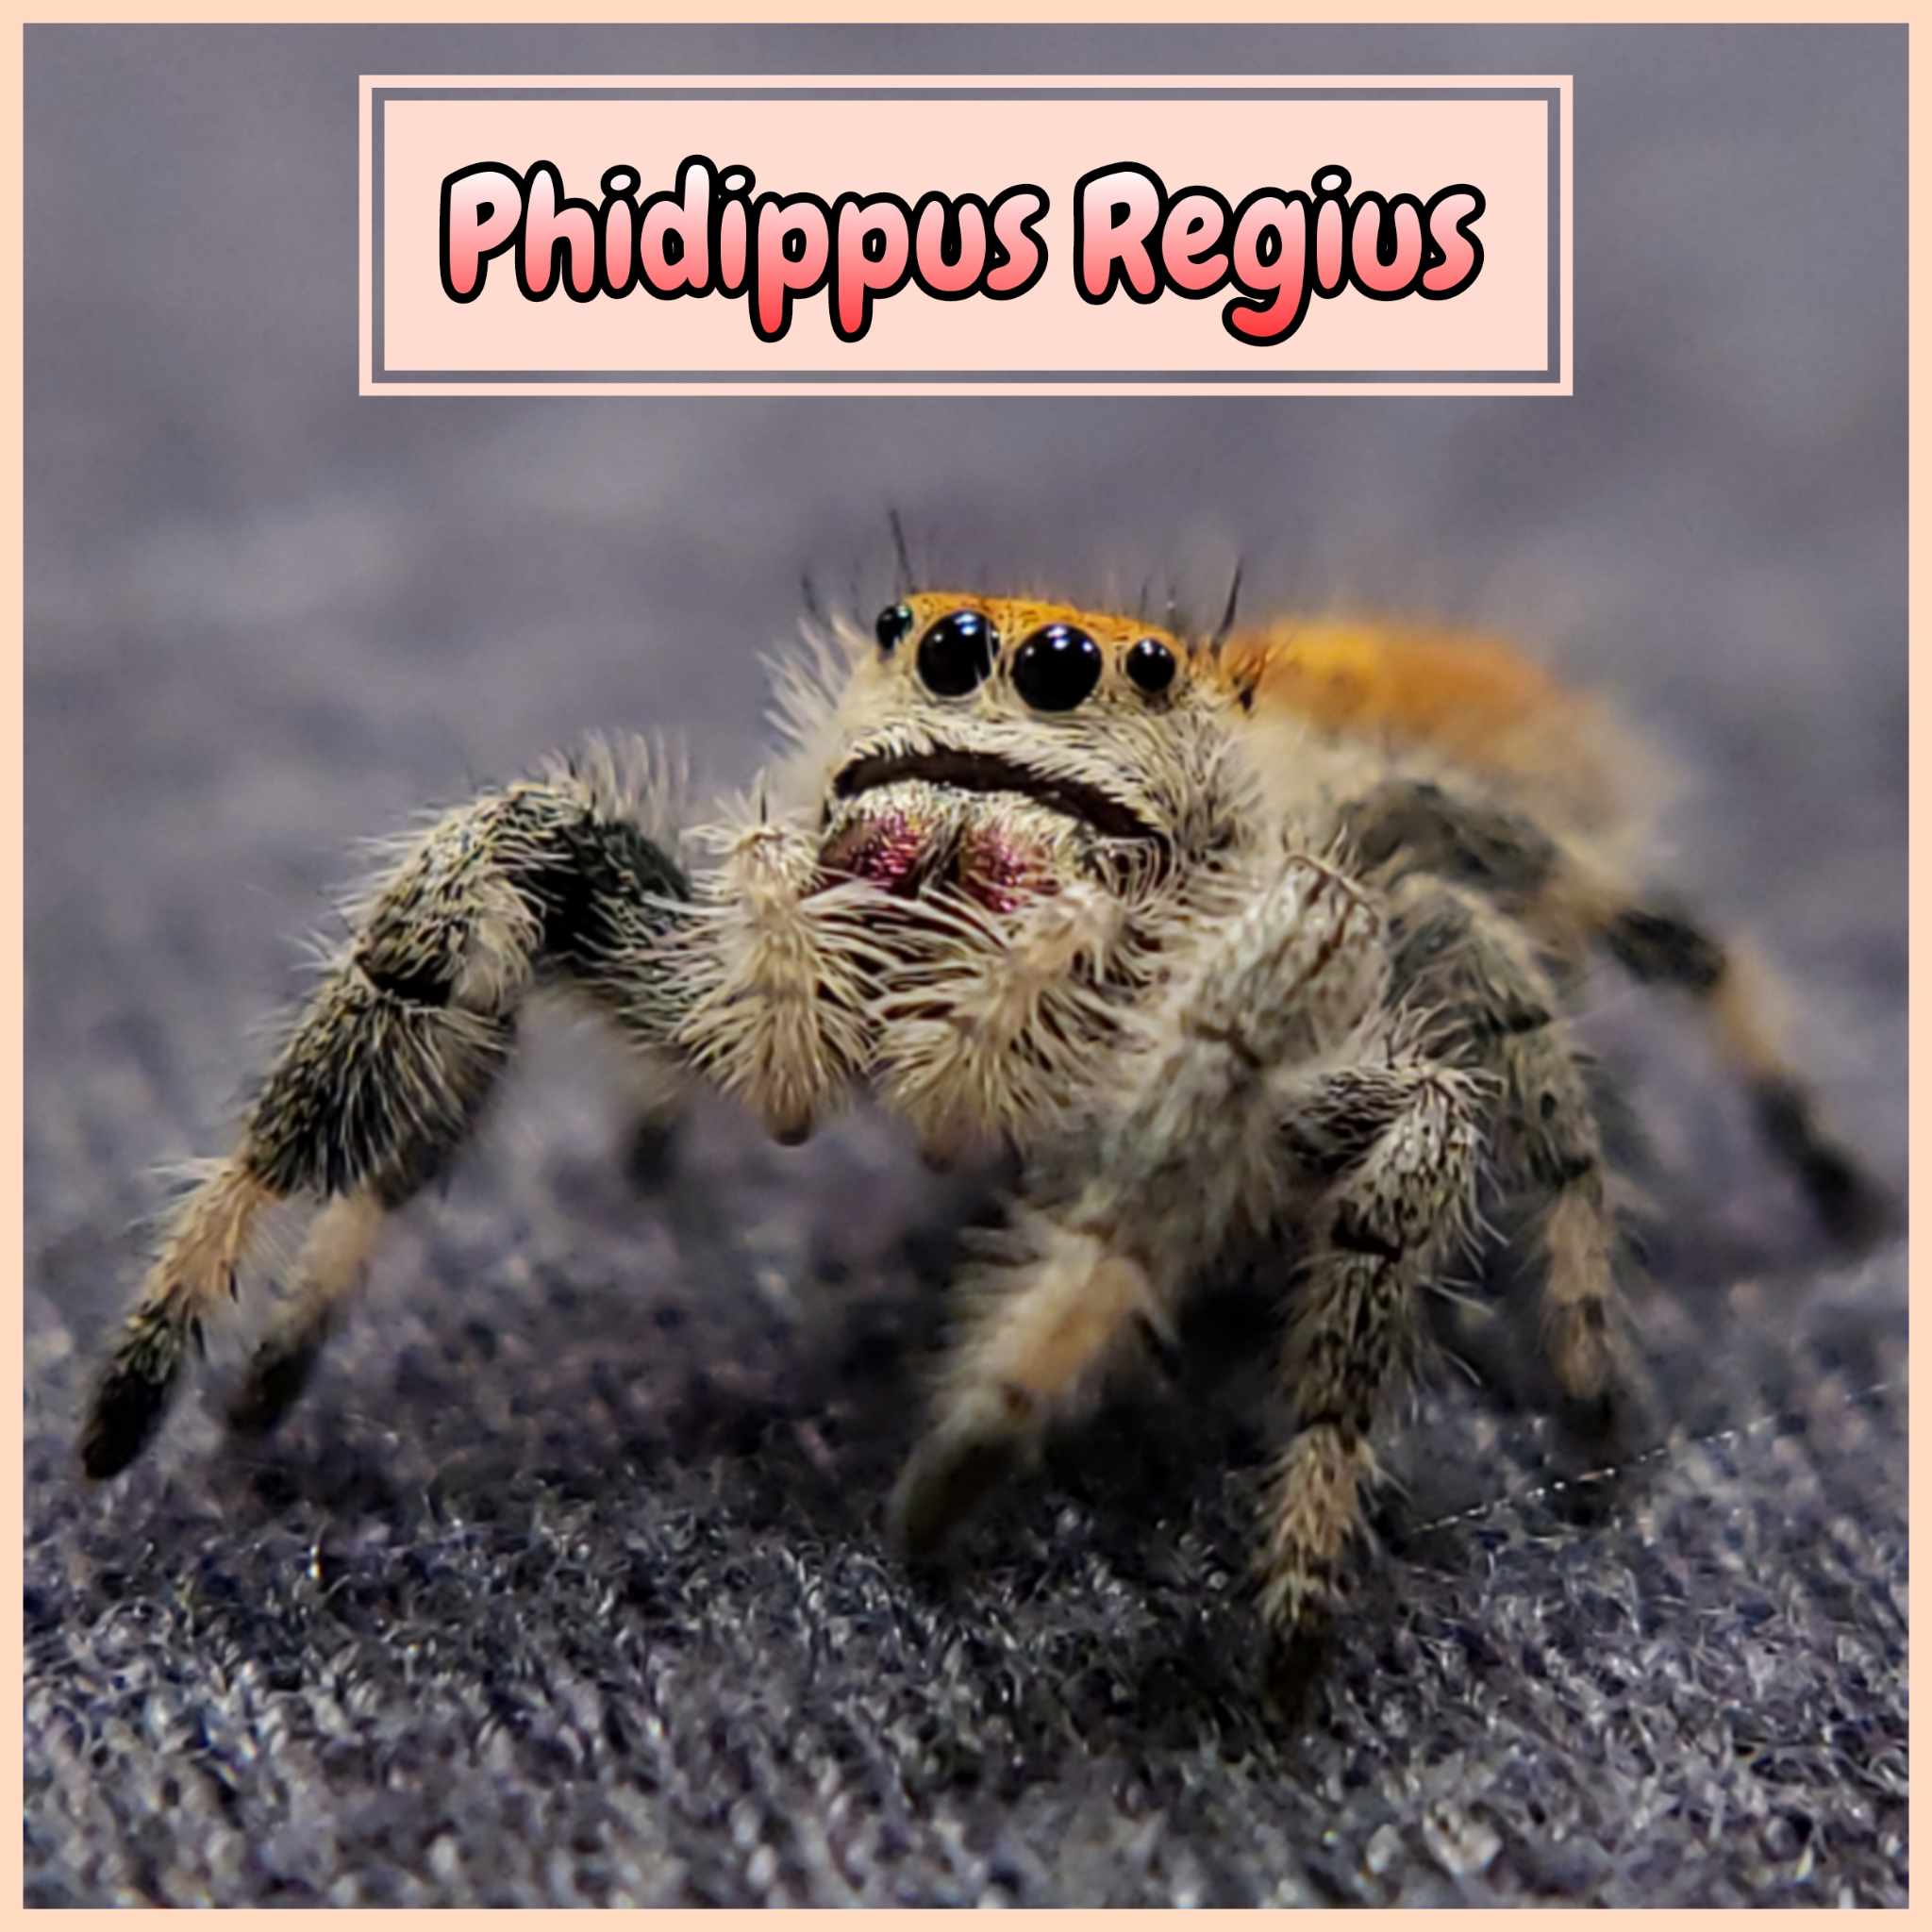 Regal Jumping Spiders For Sale (Phiddipus regius)